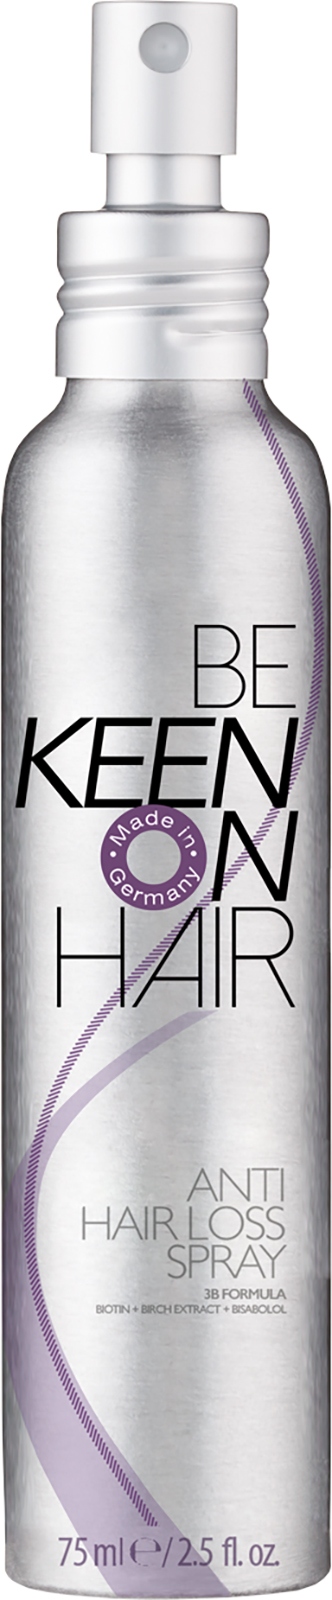 Сыворотки для волос:  KEEN -  Сыворотка-спрей против выпадения волос KEEN ANTI HAIR LOSS SPRAY (75 мл)